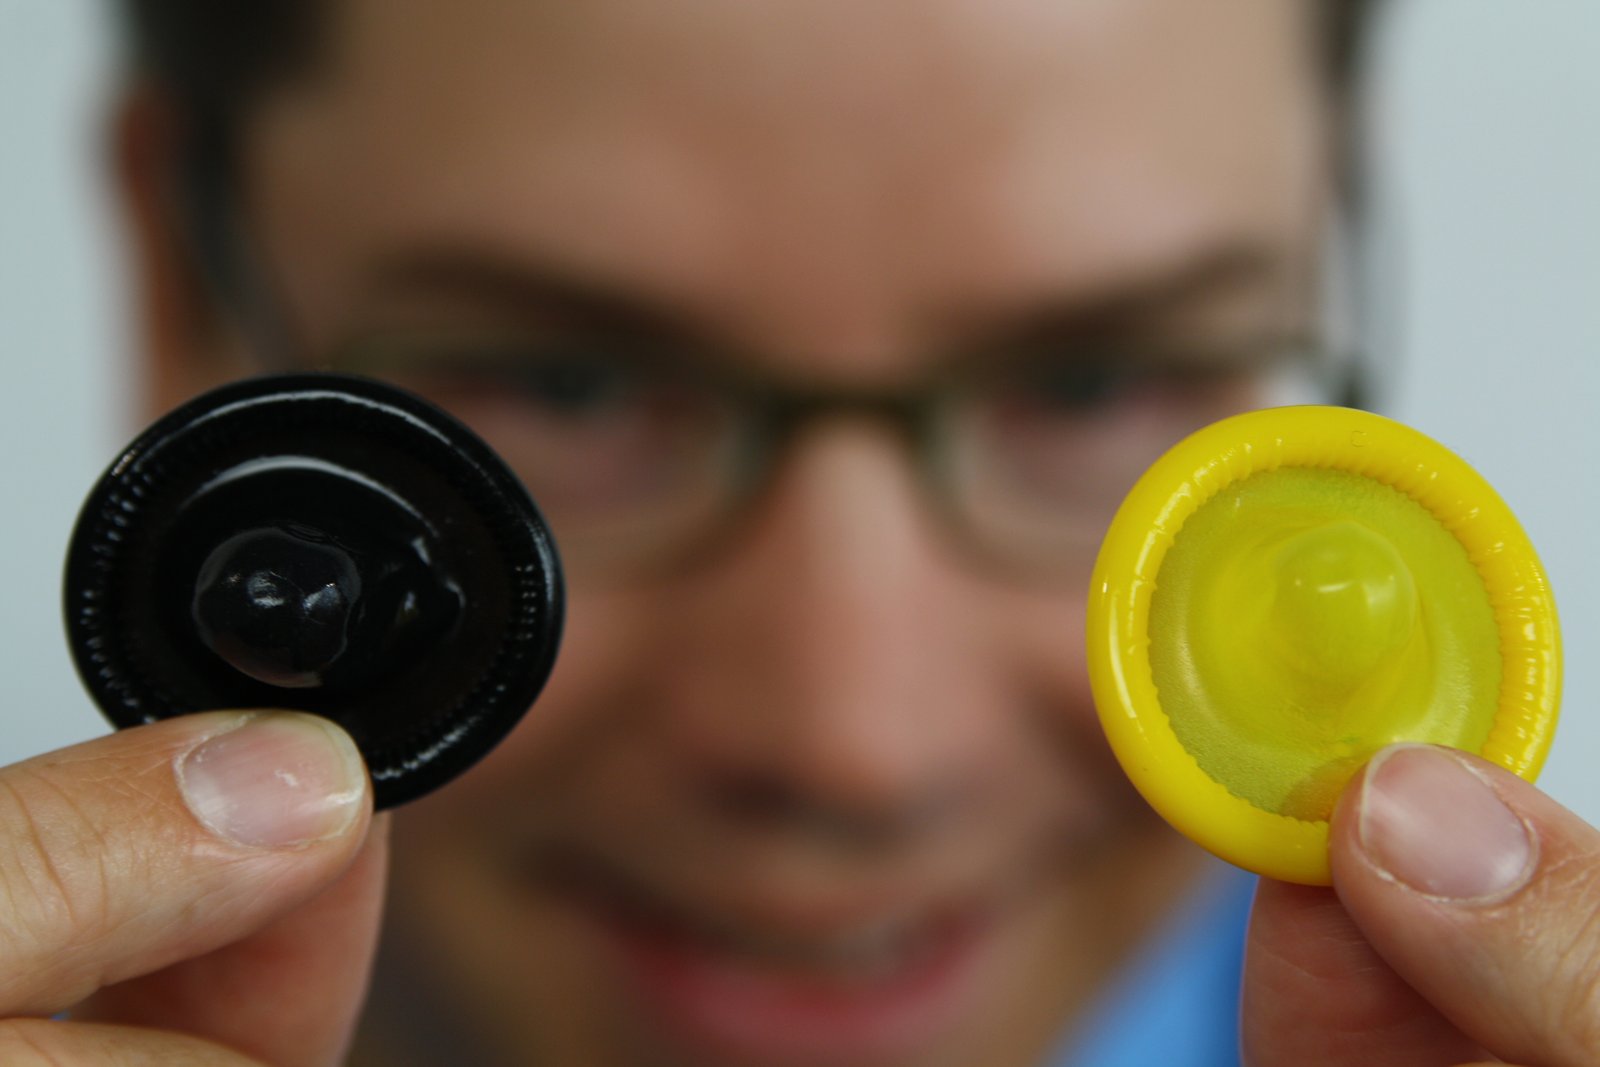 Jan Vinzenz Krause mit bunten Kondomen in gelb und schwarz